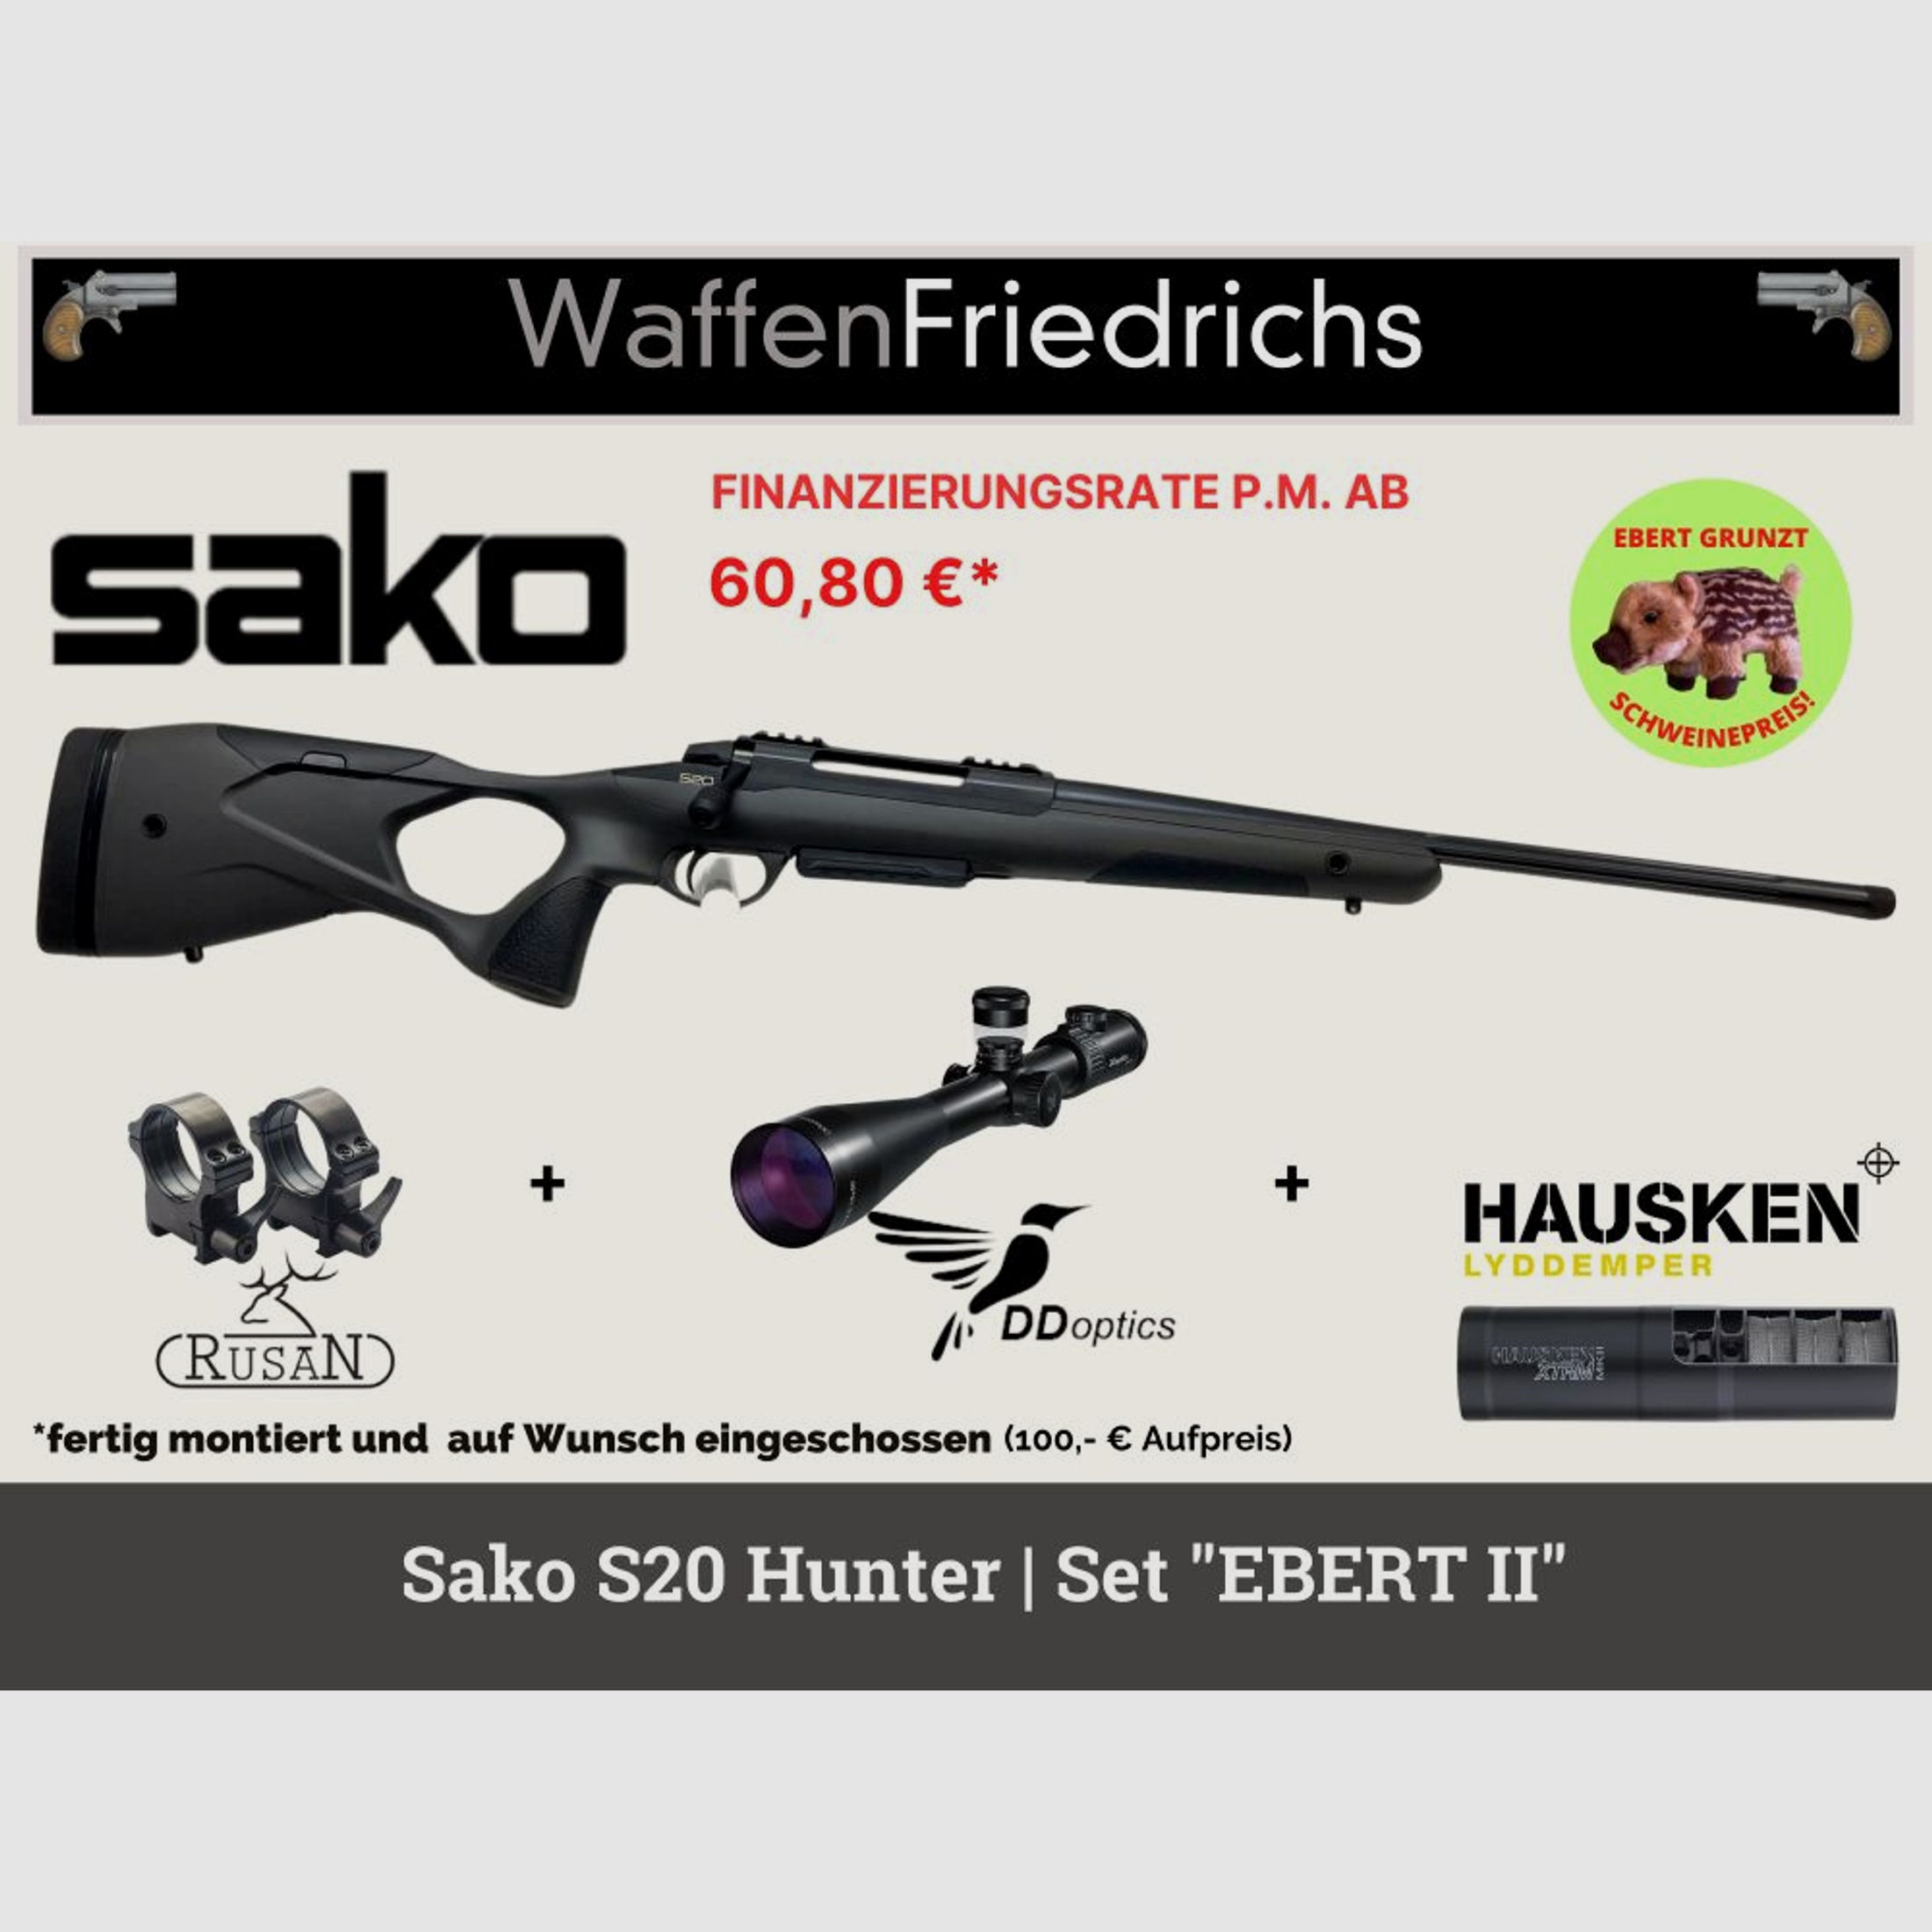 SAKO	 S20 Hunter | Jungjäger Komplettangebot "EBERT II" - Waffen Friedrichs